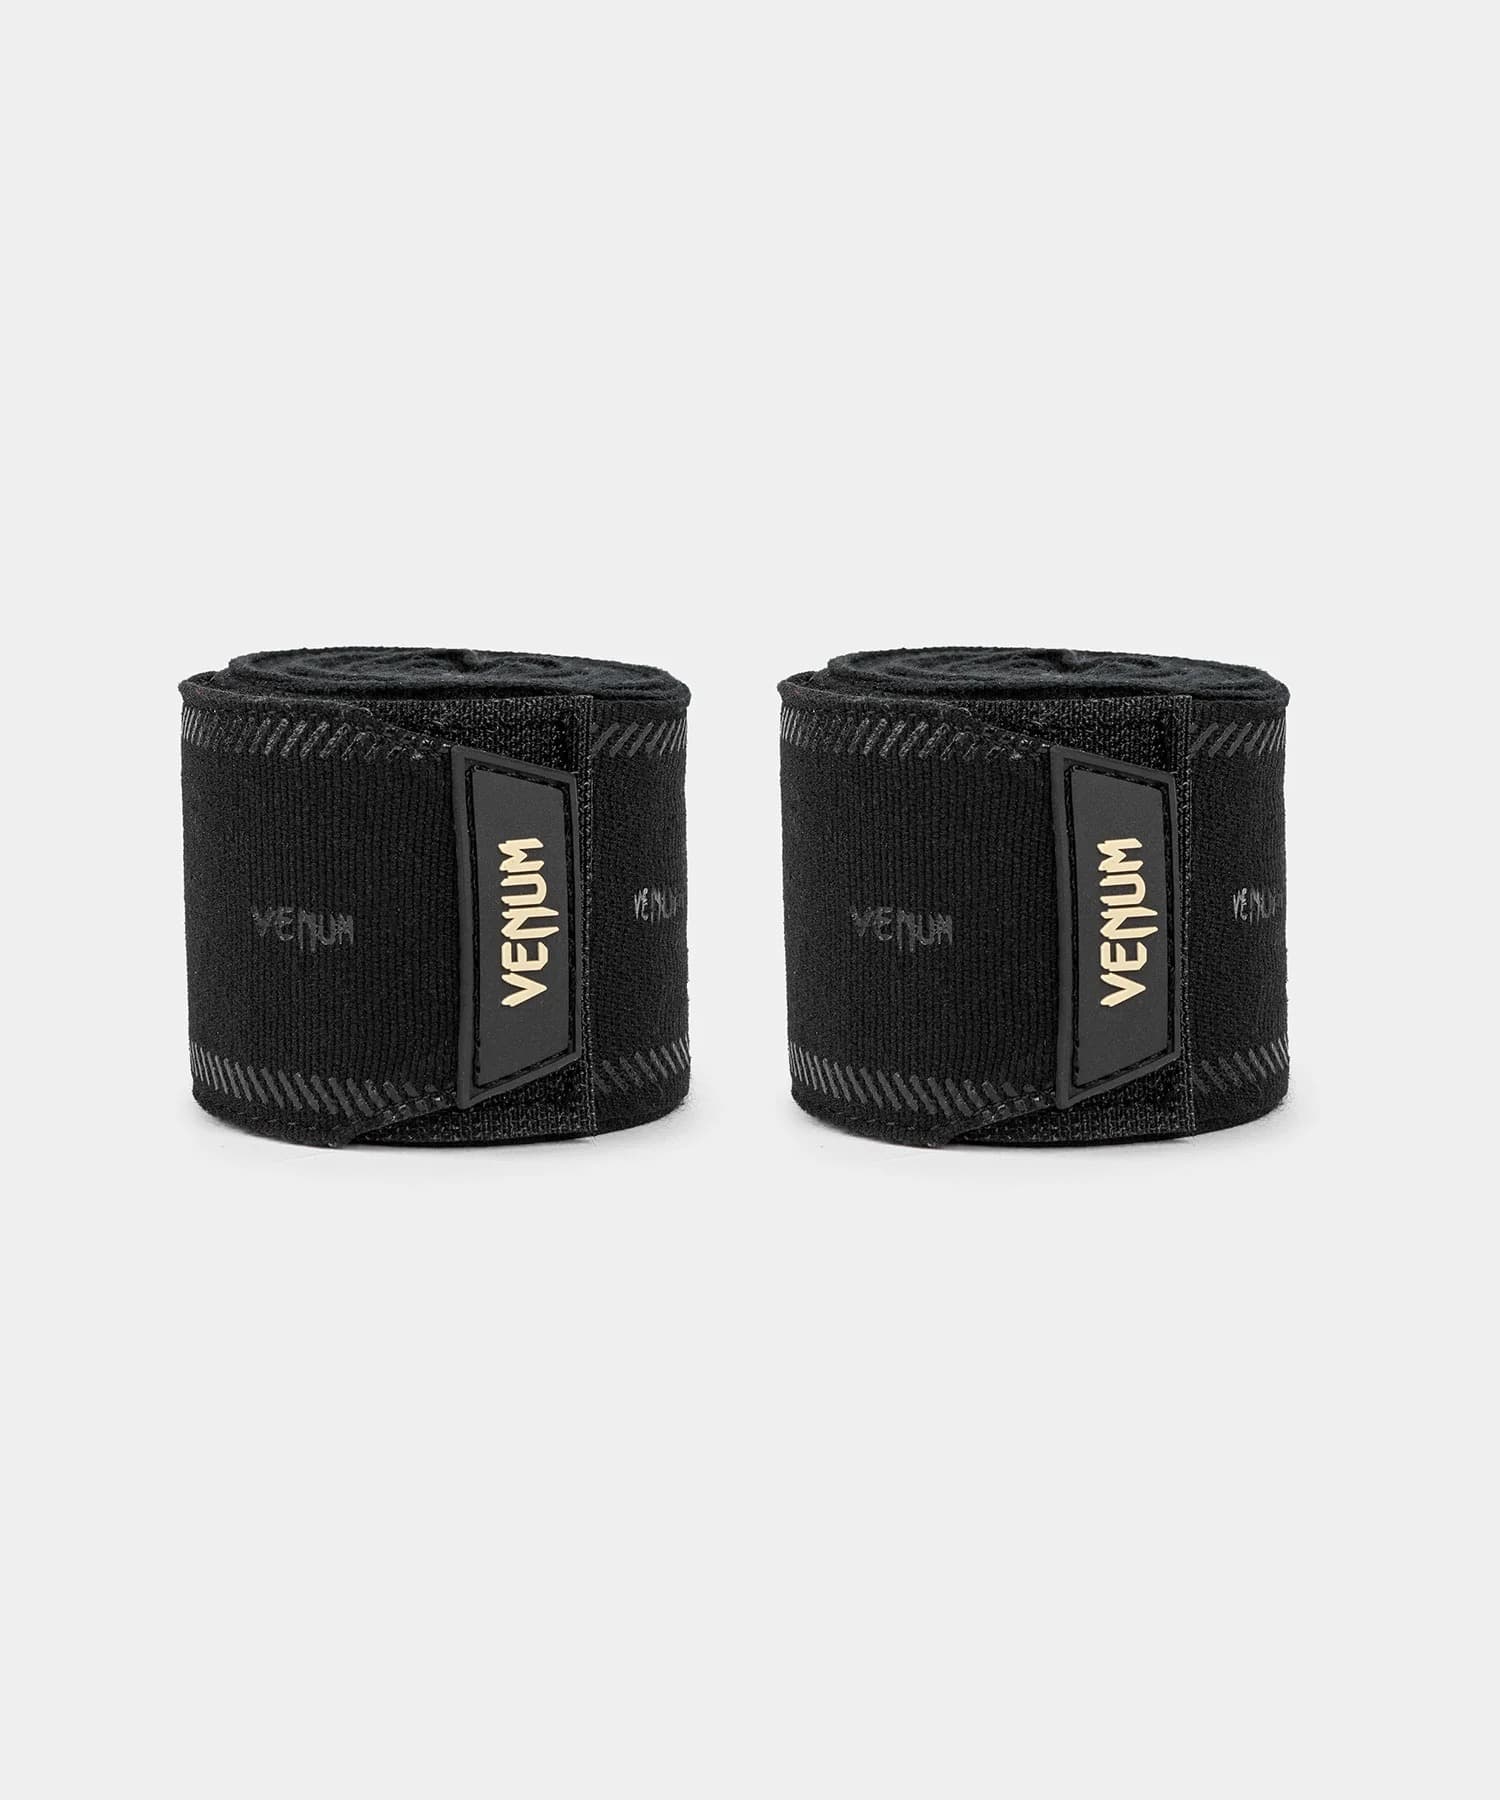 Bandages de boxe Venum noir / or (Paire) > Livraison Gratuite